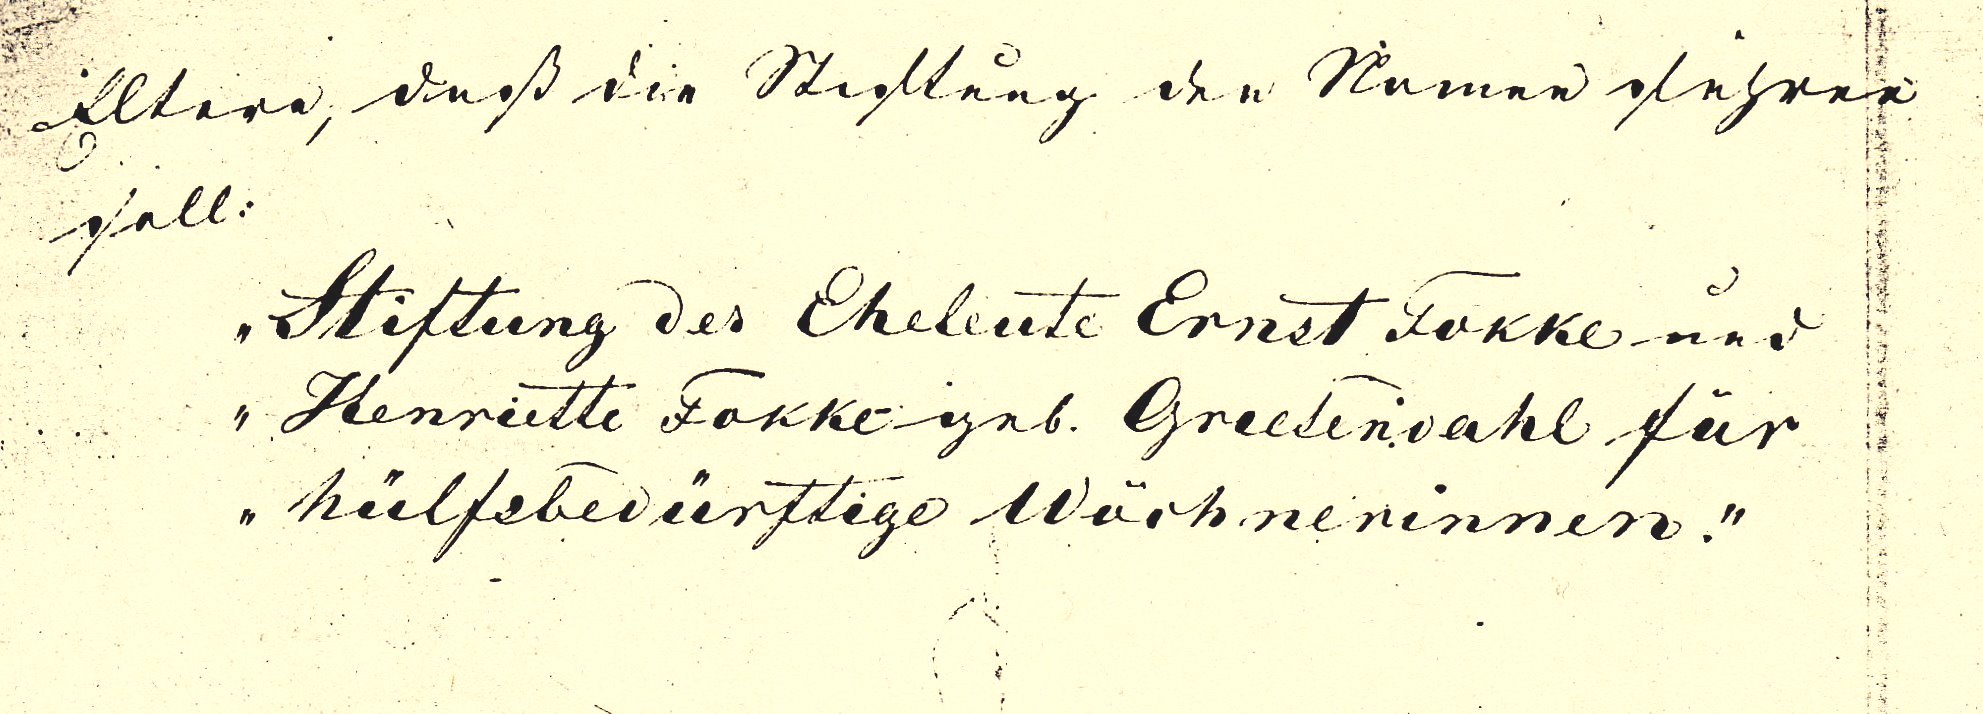 Abb. 3: Die Fundationsurkunde von 1852 bestimmte, „daß die Stiftung den Namen führen soll: Stiftung der Eheleute Ernst Fokke und Henriette Fokke geb. Greesendahl für hülfsbedürftige Wöchnerinnen.“